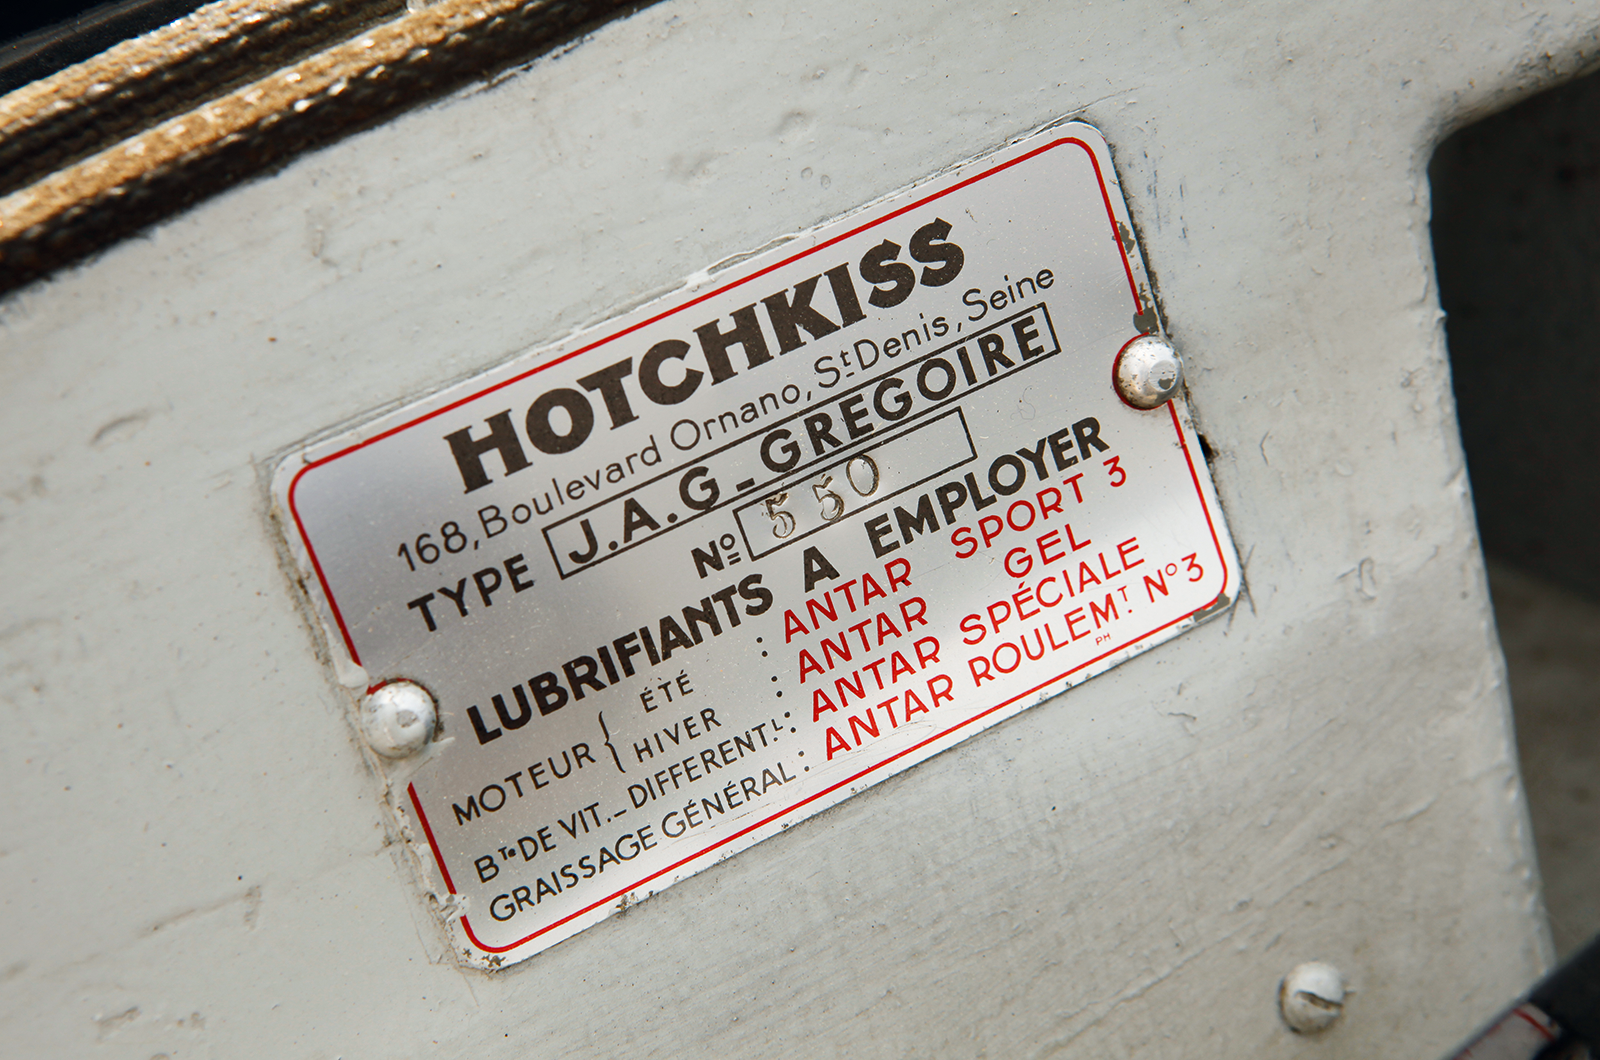 Classic & Sports Car – Hotchkiss-Grégoire: fooled again